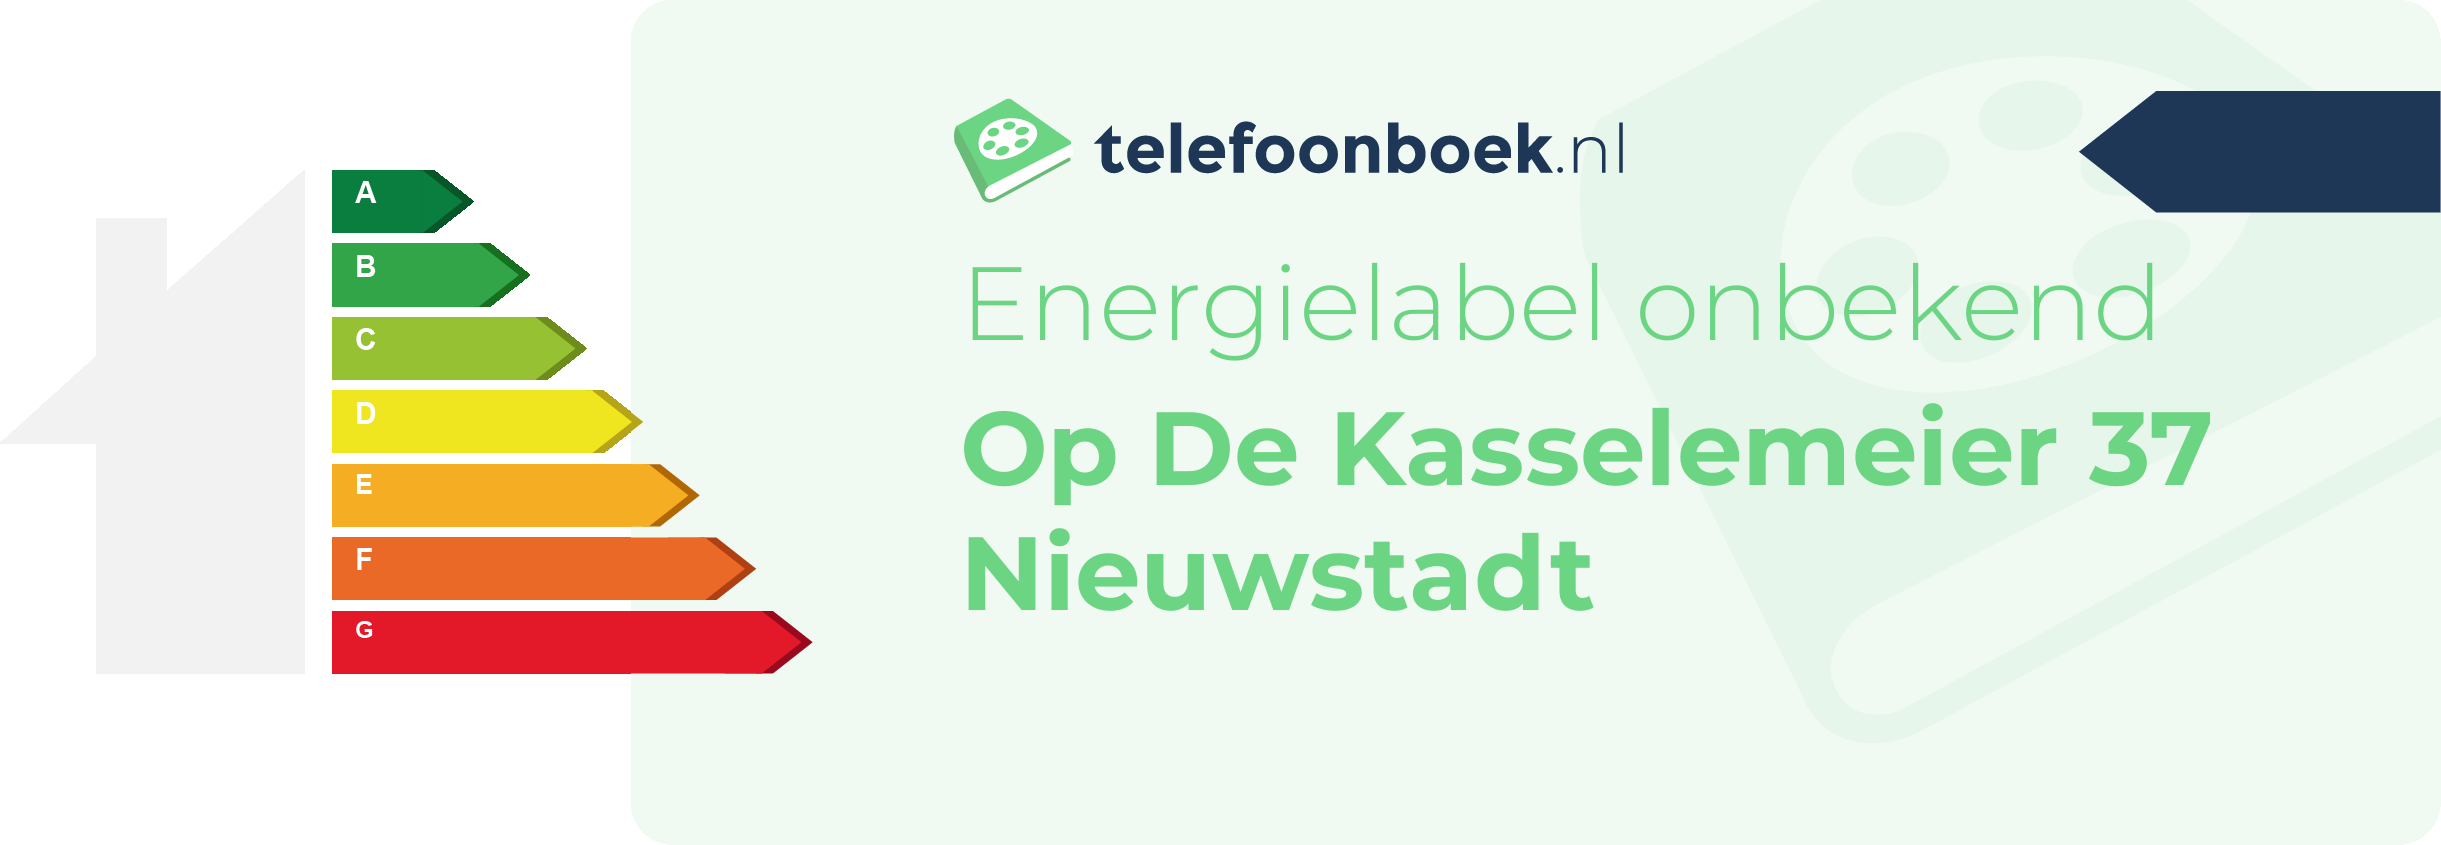 Energielabel Op De Kasselemeier 37 Nieuwstadt